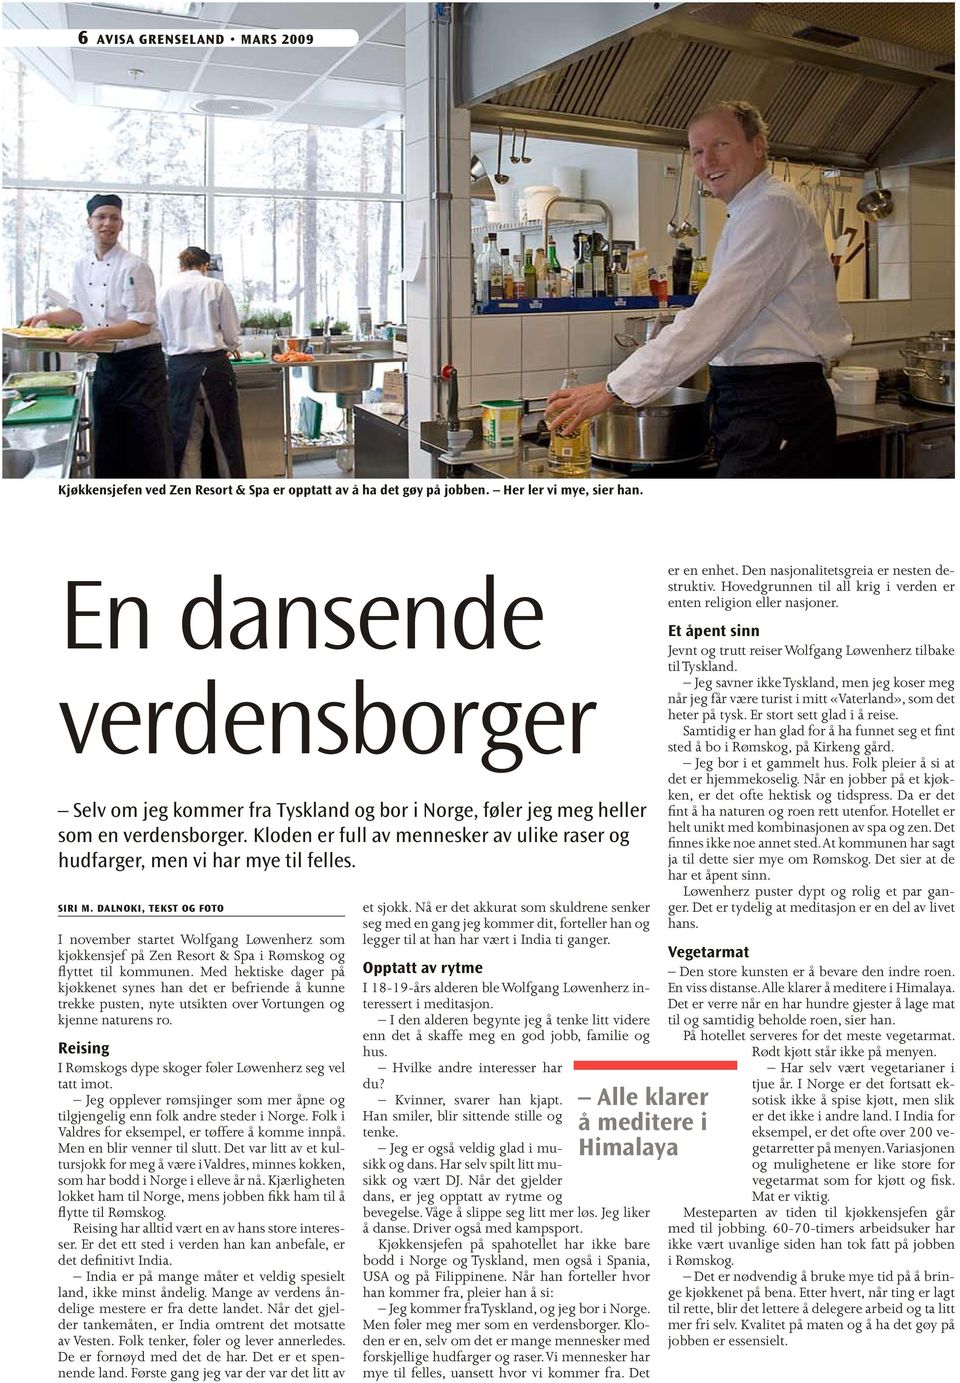 Siri M. Dalnoki, tekst og foto I november startet Wolfgang Løwenherz som kjøkkensjef på Zen Resort & Spa i Rømskog og flyttet til kommunen.